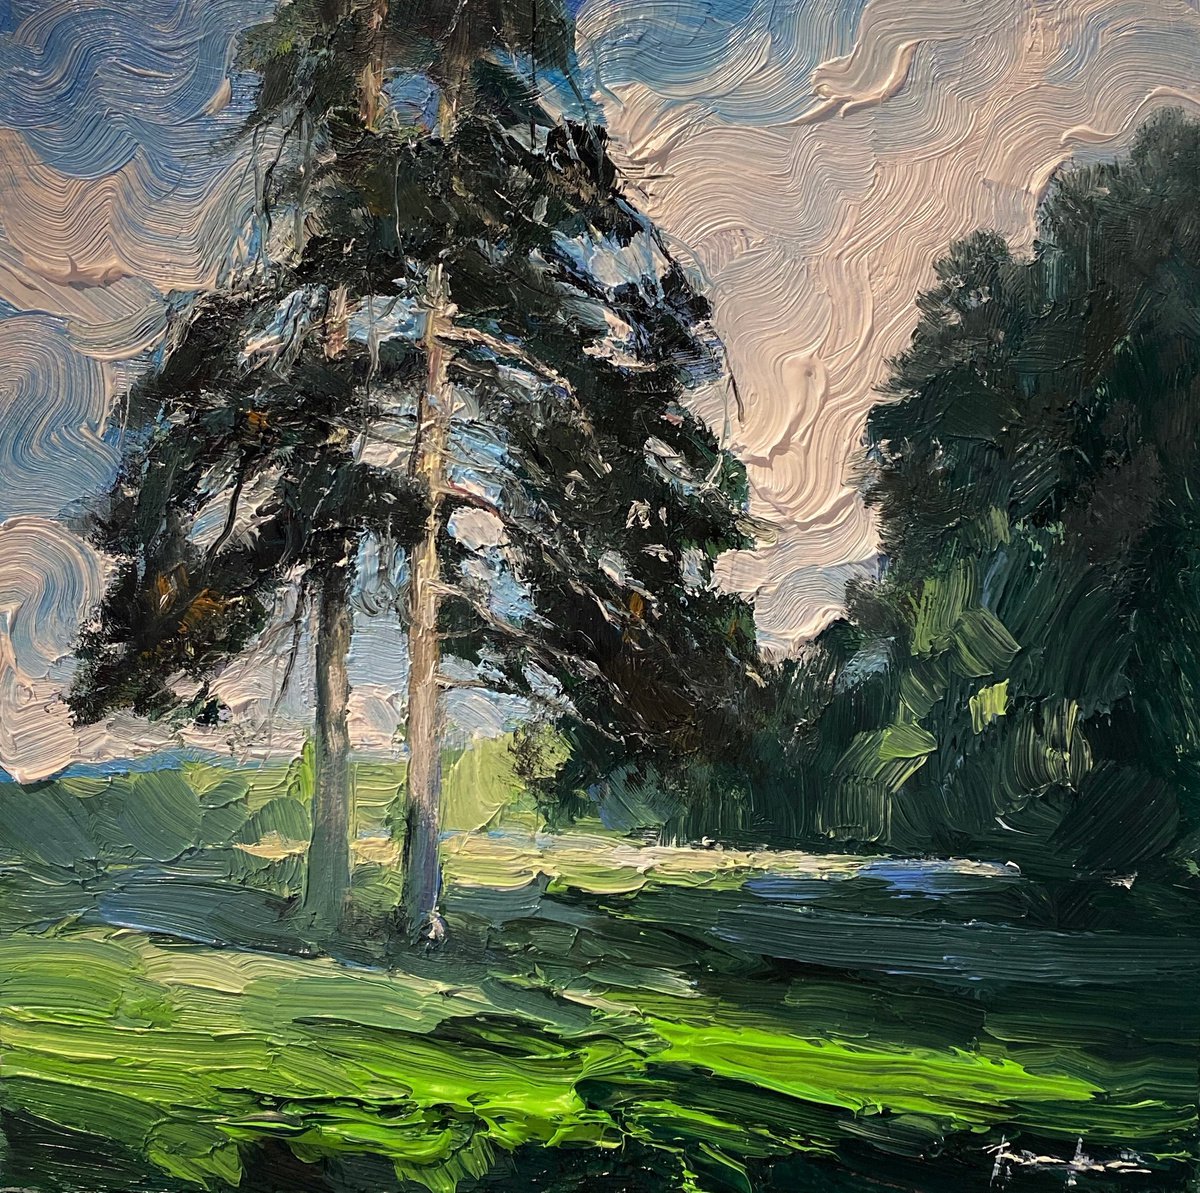 -Pinesoriginal oil painting by Artem Grunyka by Artem Grunyka